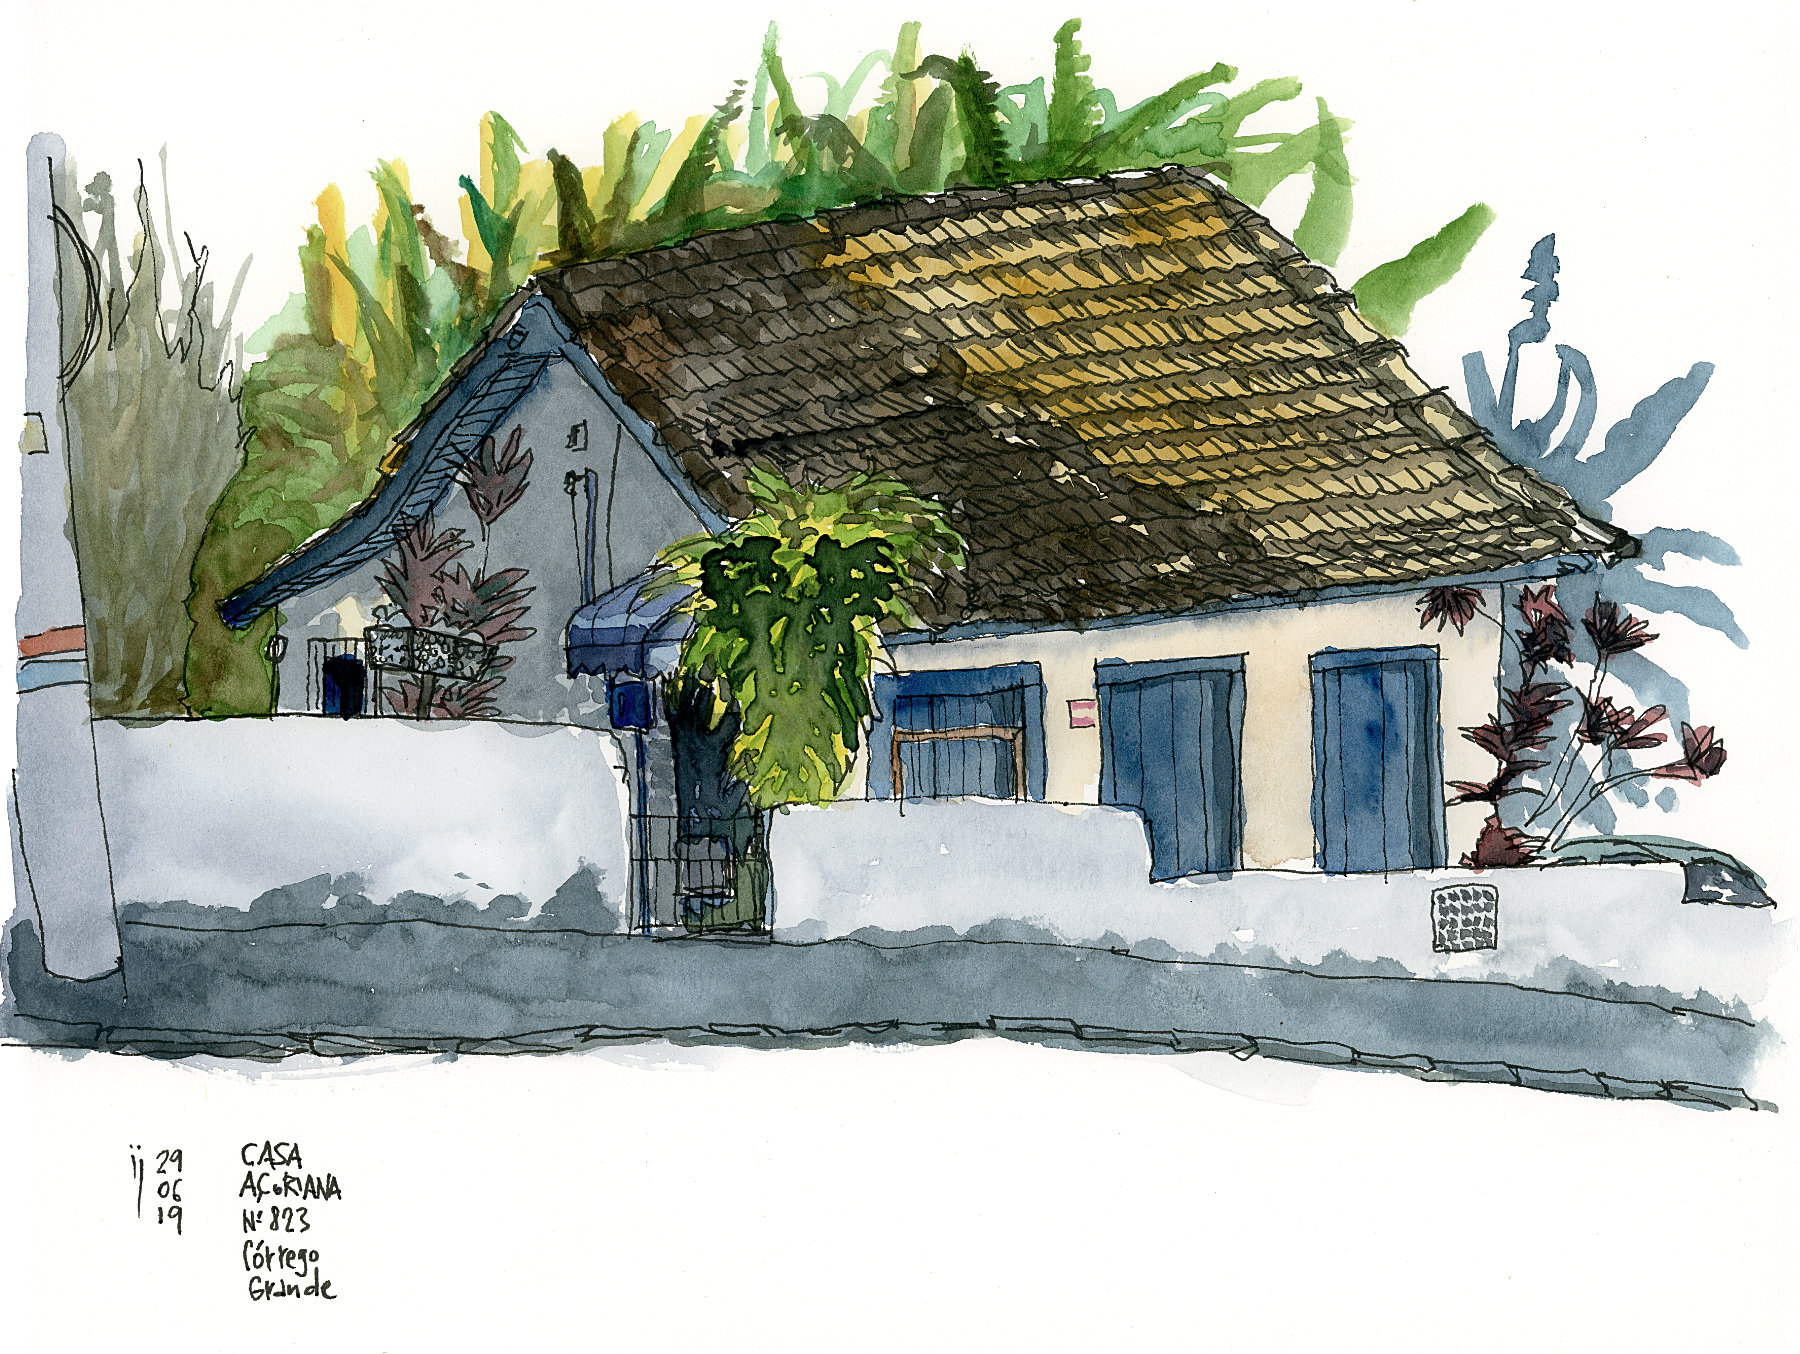 Desenho mostrando a fachada e a lateral de uma casa de arquitetura açoriana com uma mureta na frente.